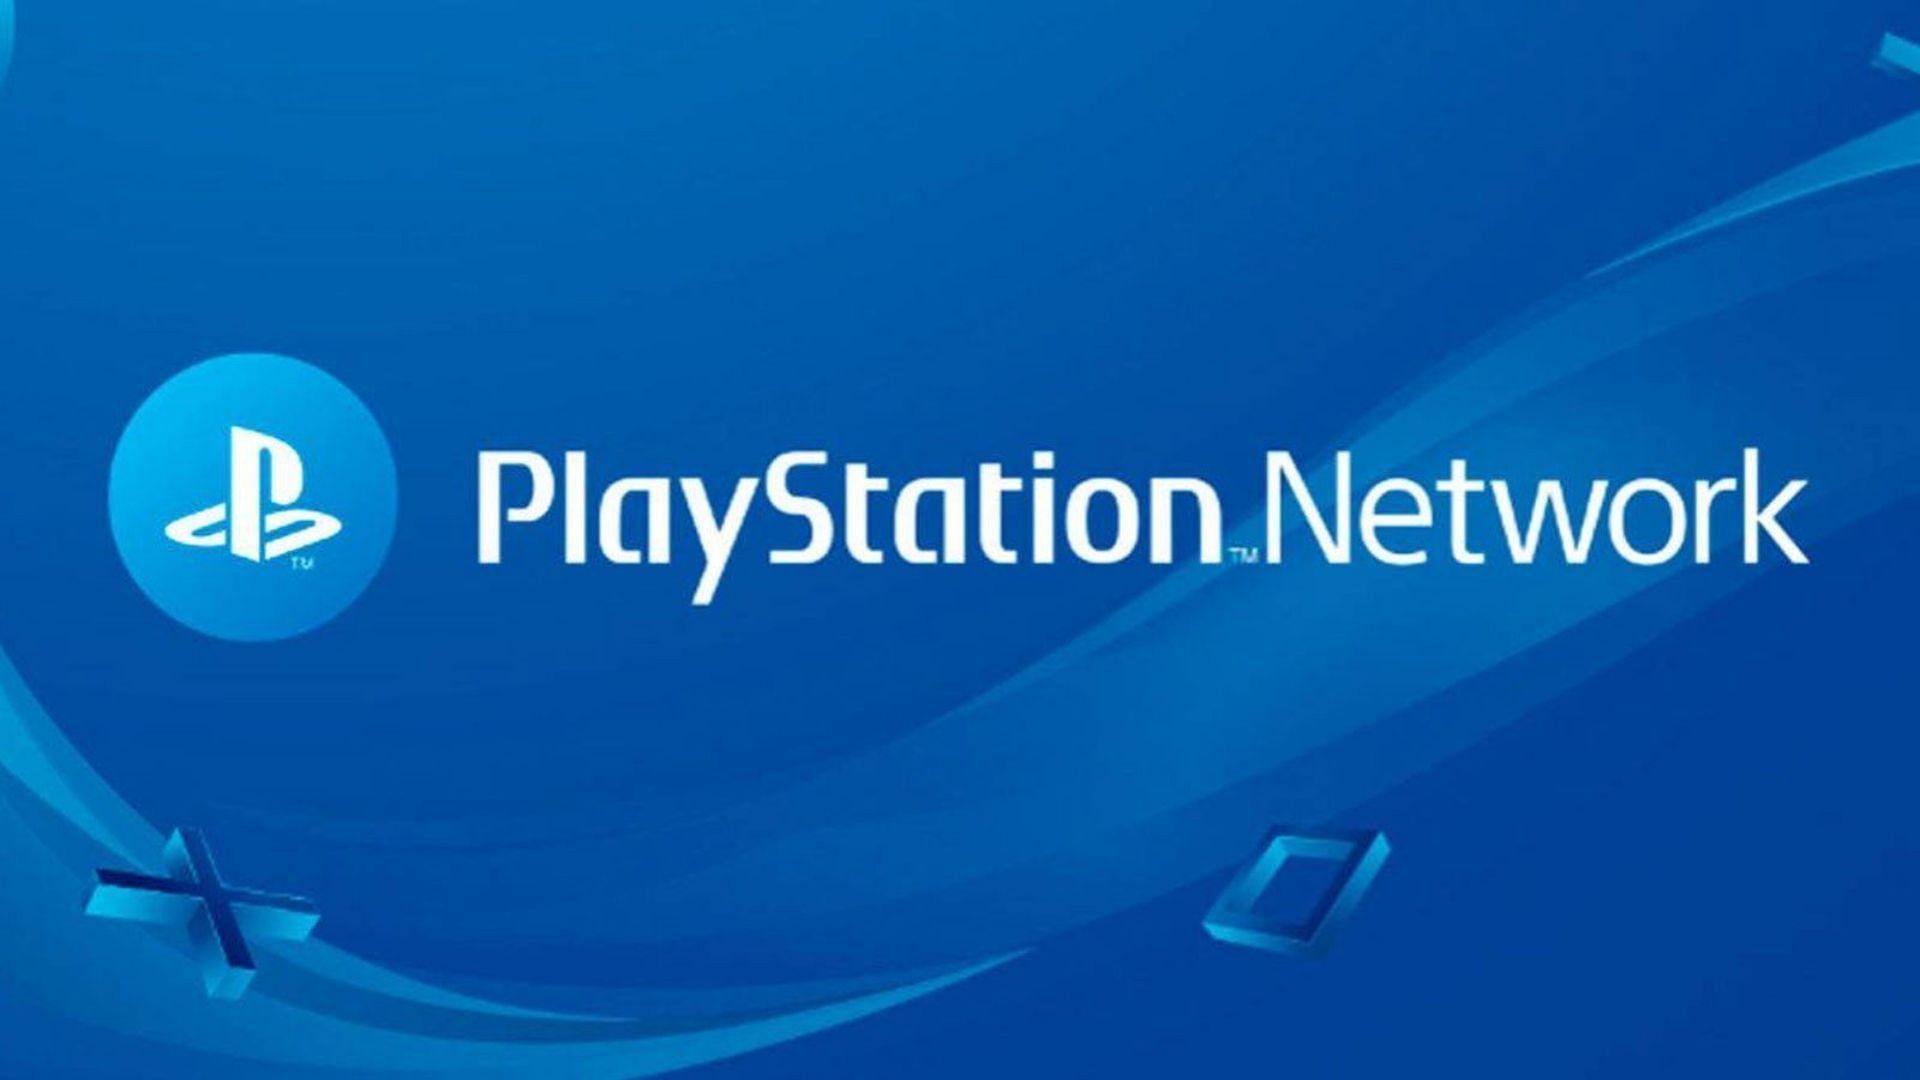 いくつかの簡単な手順で Steam を PlayStation Network に接続できます (画像は PlayStation 経由)